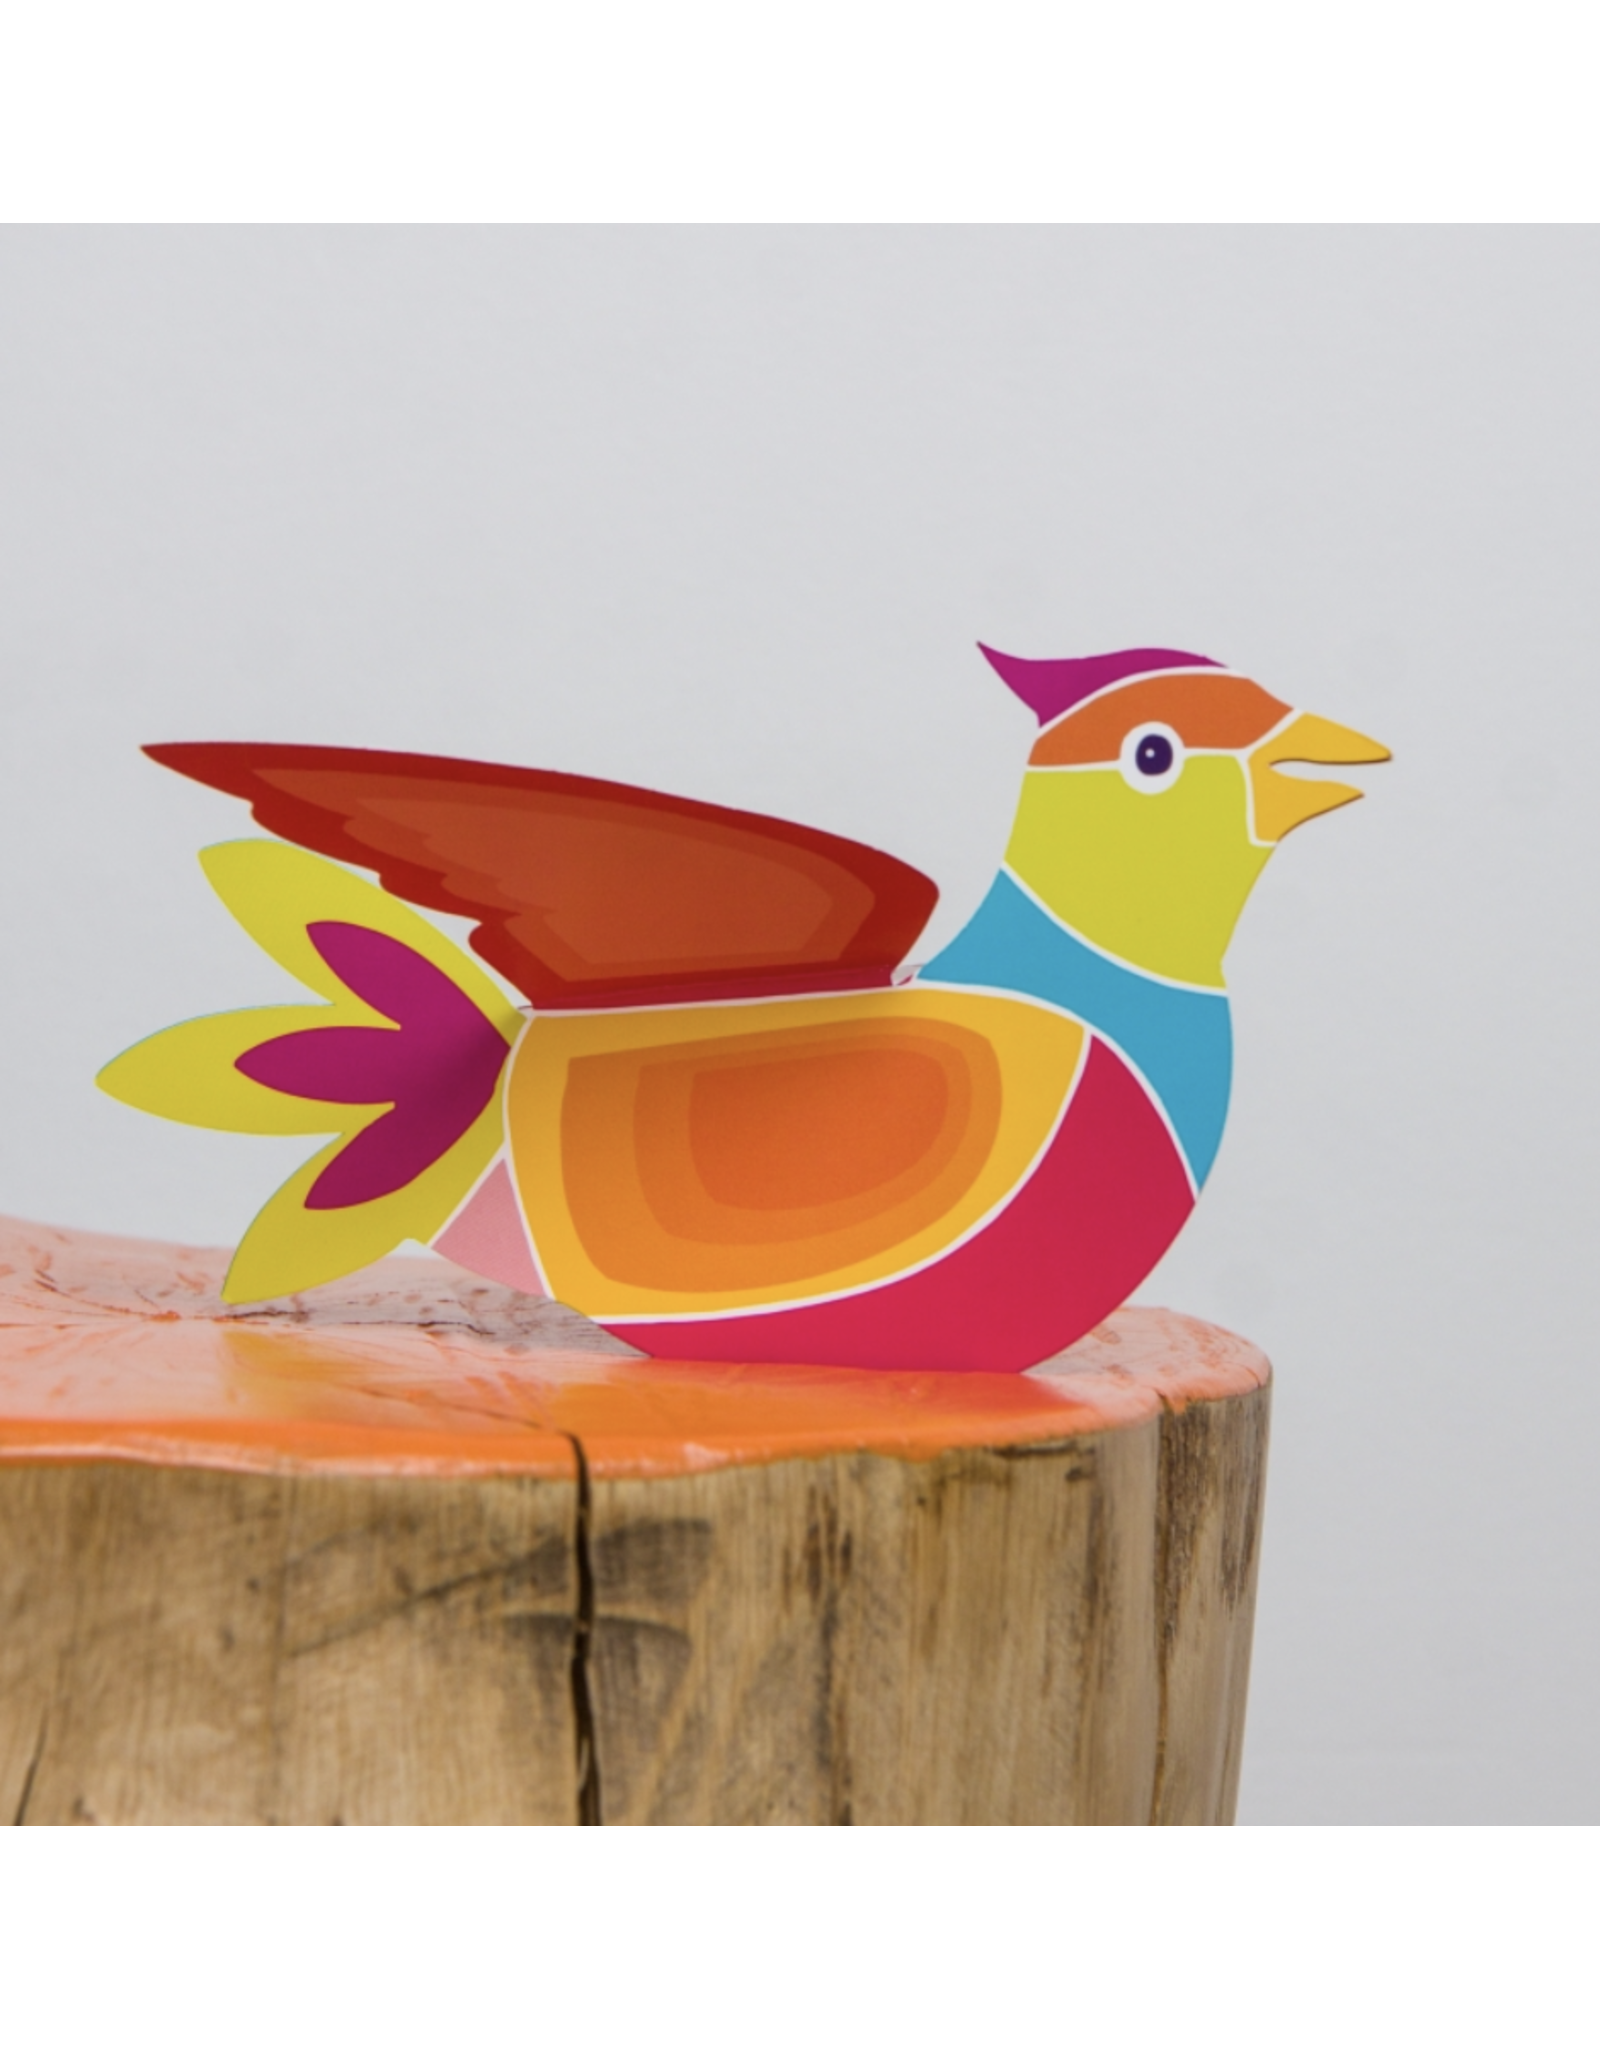 Symposion Wenskaart - Geluksvogel, blij voor jou - 3D kaart + Envelop